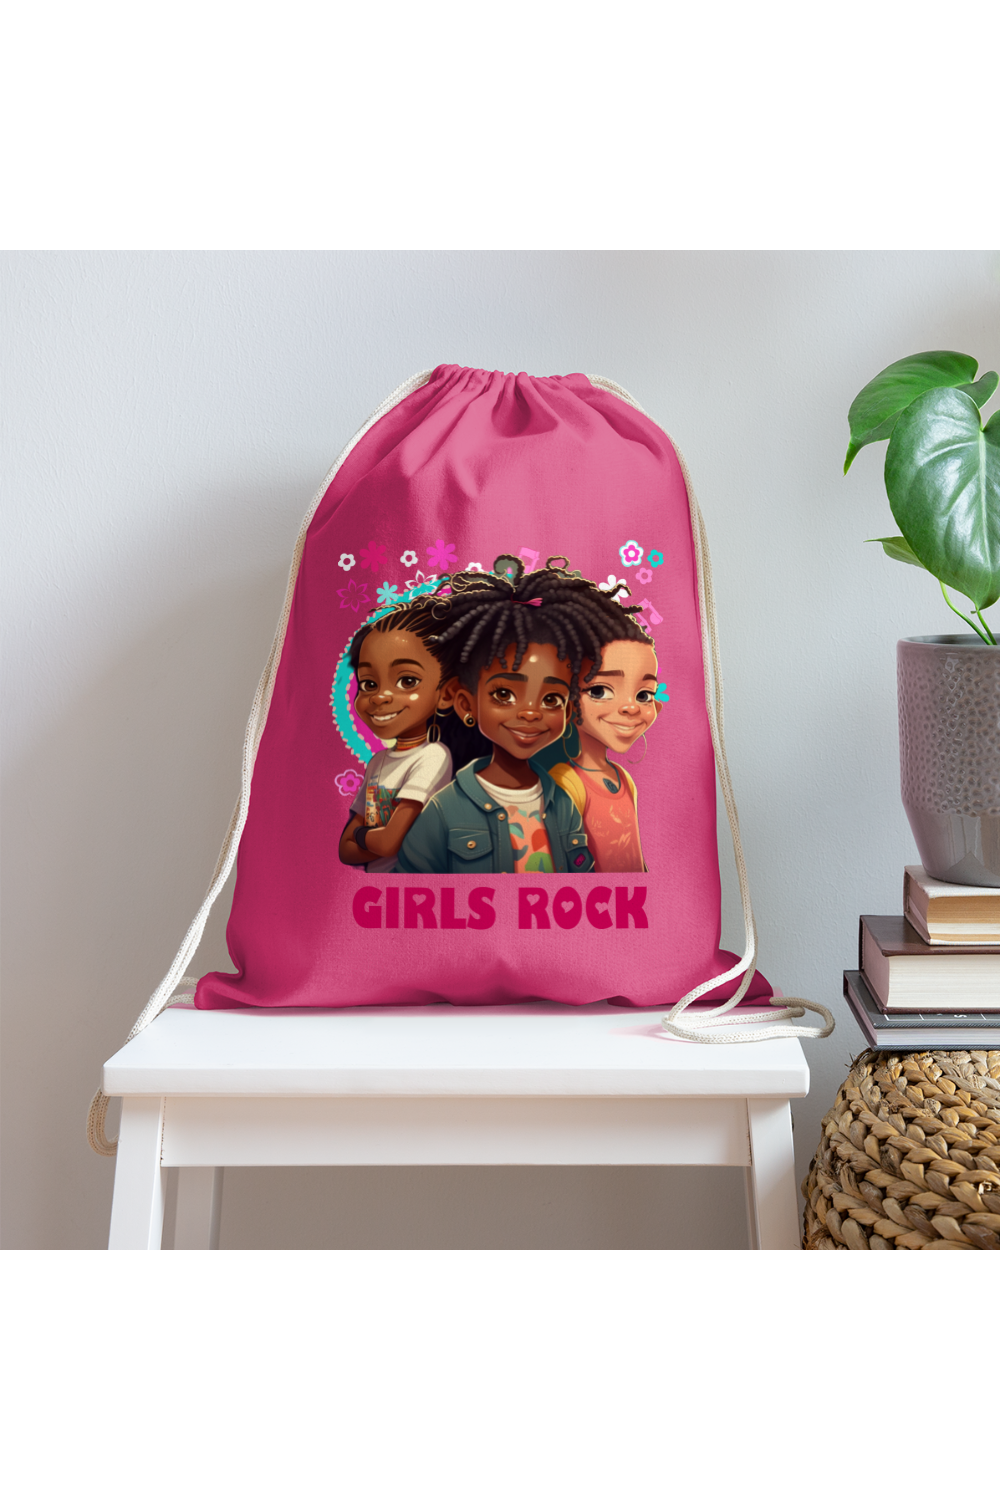 African American Girls Rock Cotton Drawstring Bag - pink - NicholesGifts.online